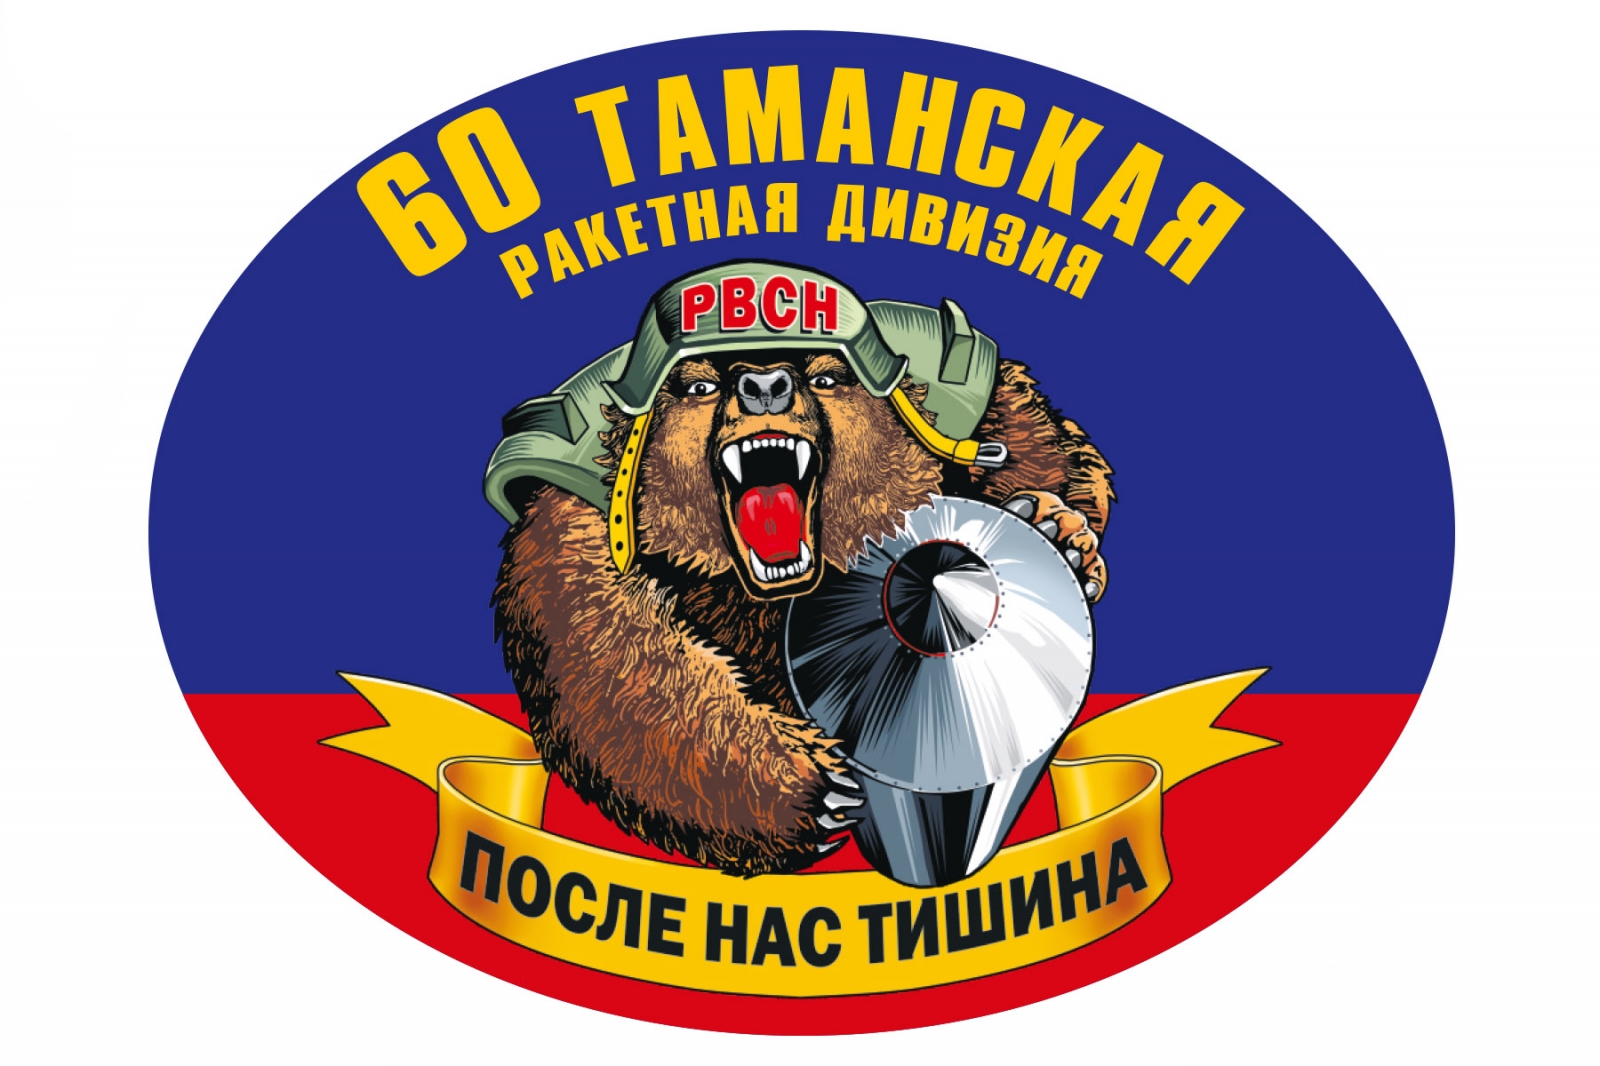 Наклейка на авто "60 Таманская ракетная дивизия"